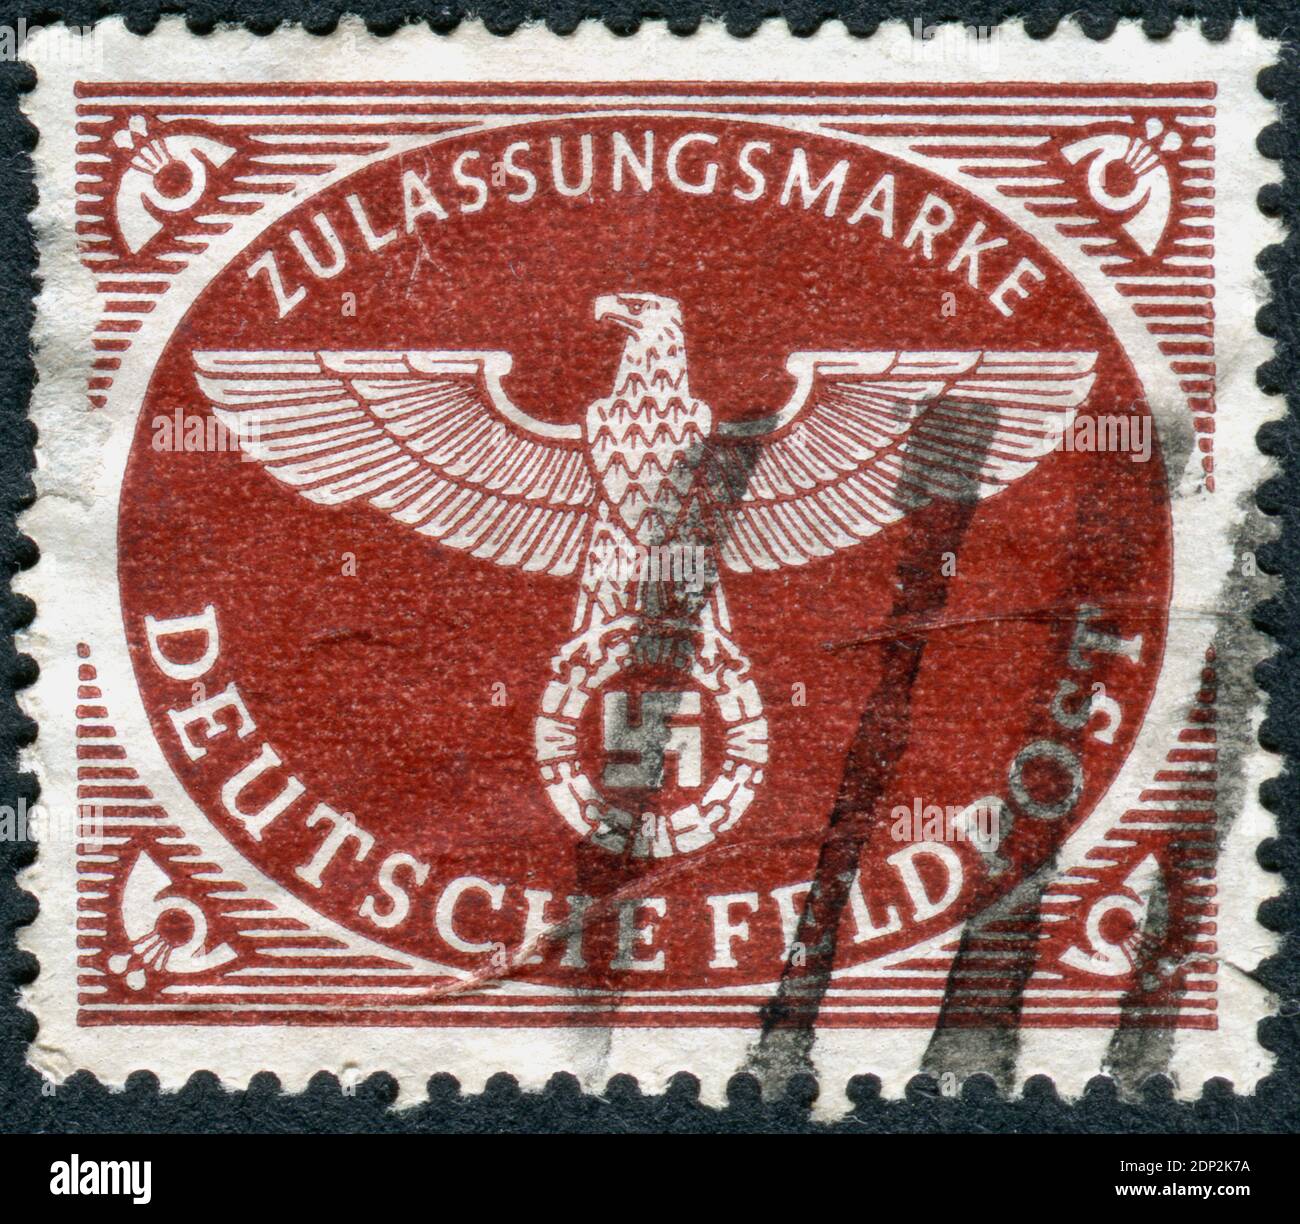 DEUTSCHLAND - UM 1942: Briefmarke (Militärpost) gedruckt in Deutschland, zeigt ein Nazi-Emblem, um 1942 Stockfoto